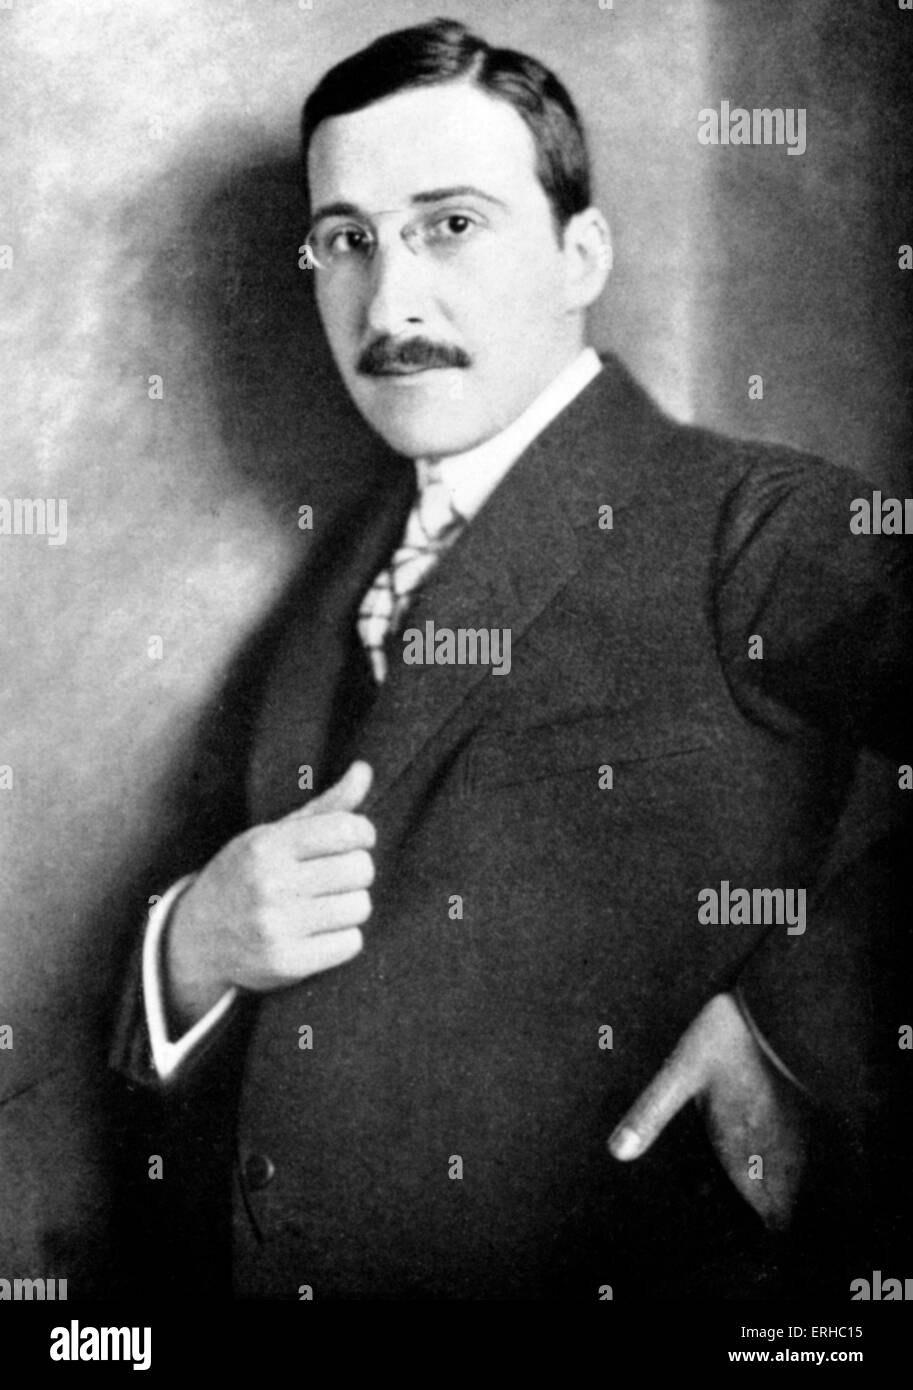 Stefan Zweig als junger Mann. Österreichischer Schriftsteller. Selbstmord mit seiner Frau in Brasilien. 28. November 1881 - 22. Februar 1942 Stockfoto